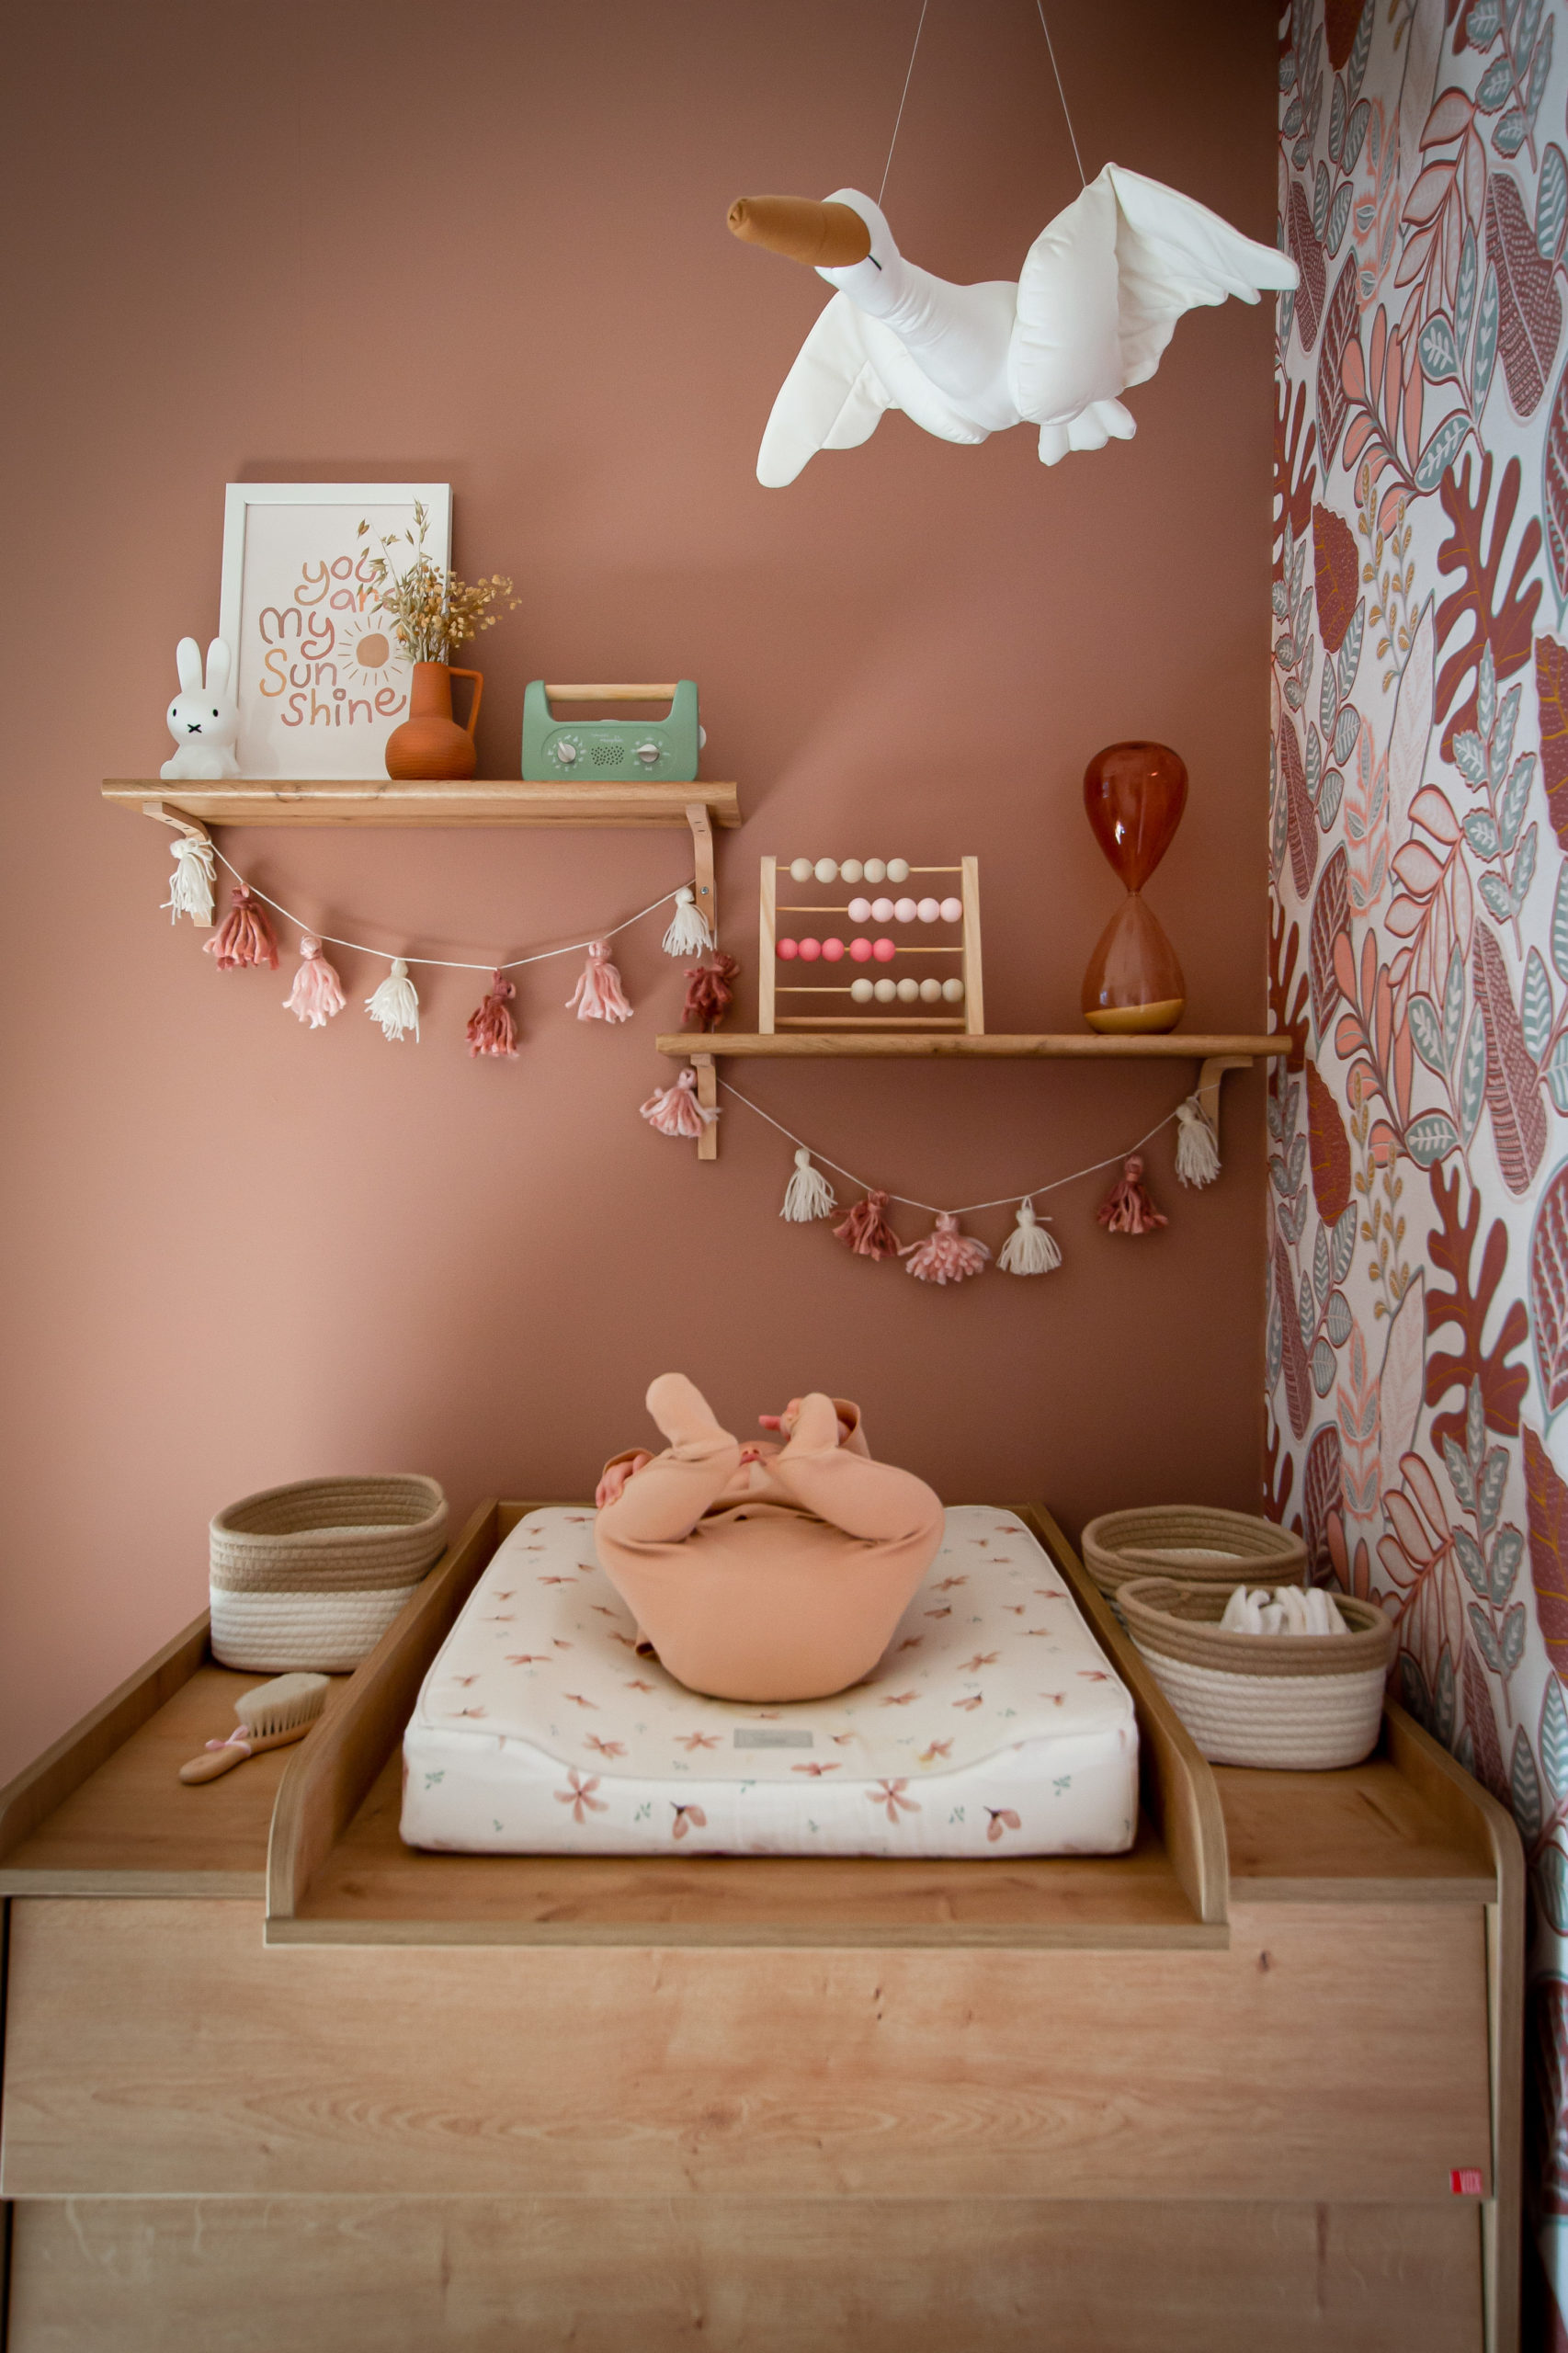 Décoration chambre bébé - Notre mondeux